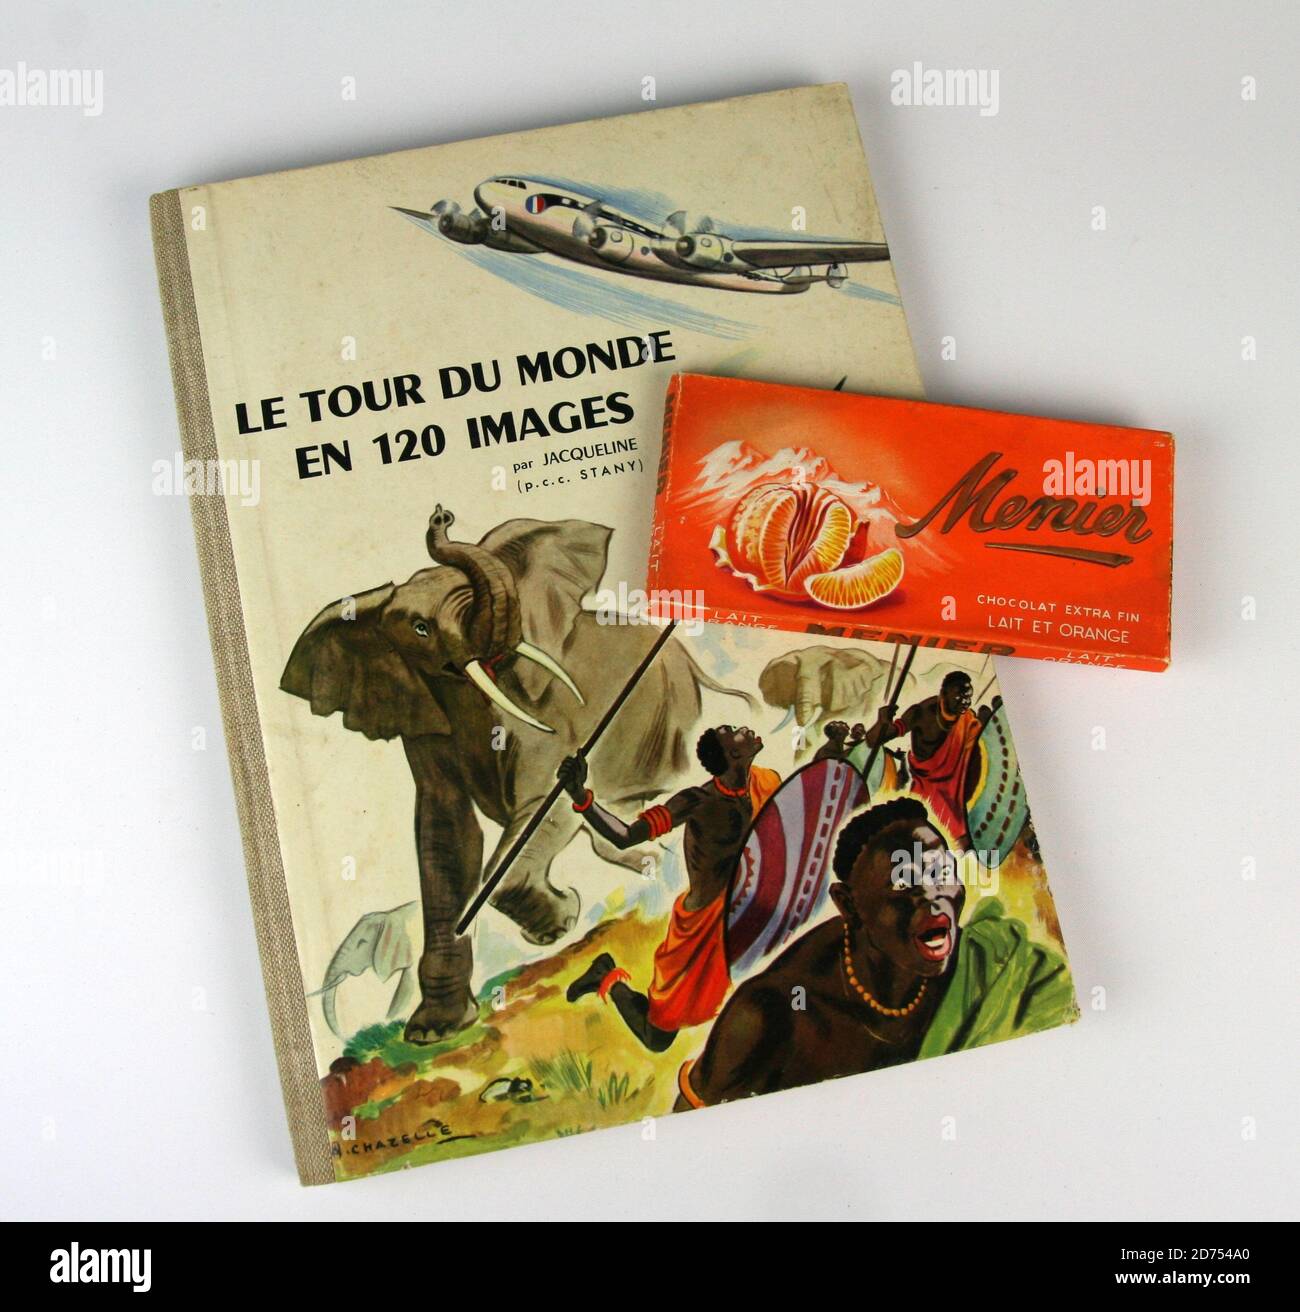 Collection d'images et table de chocolat Menier vers 1955 Banque D'Images